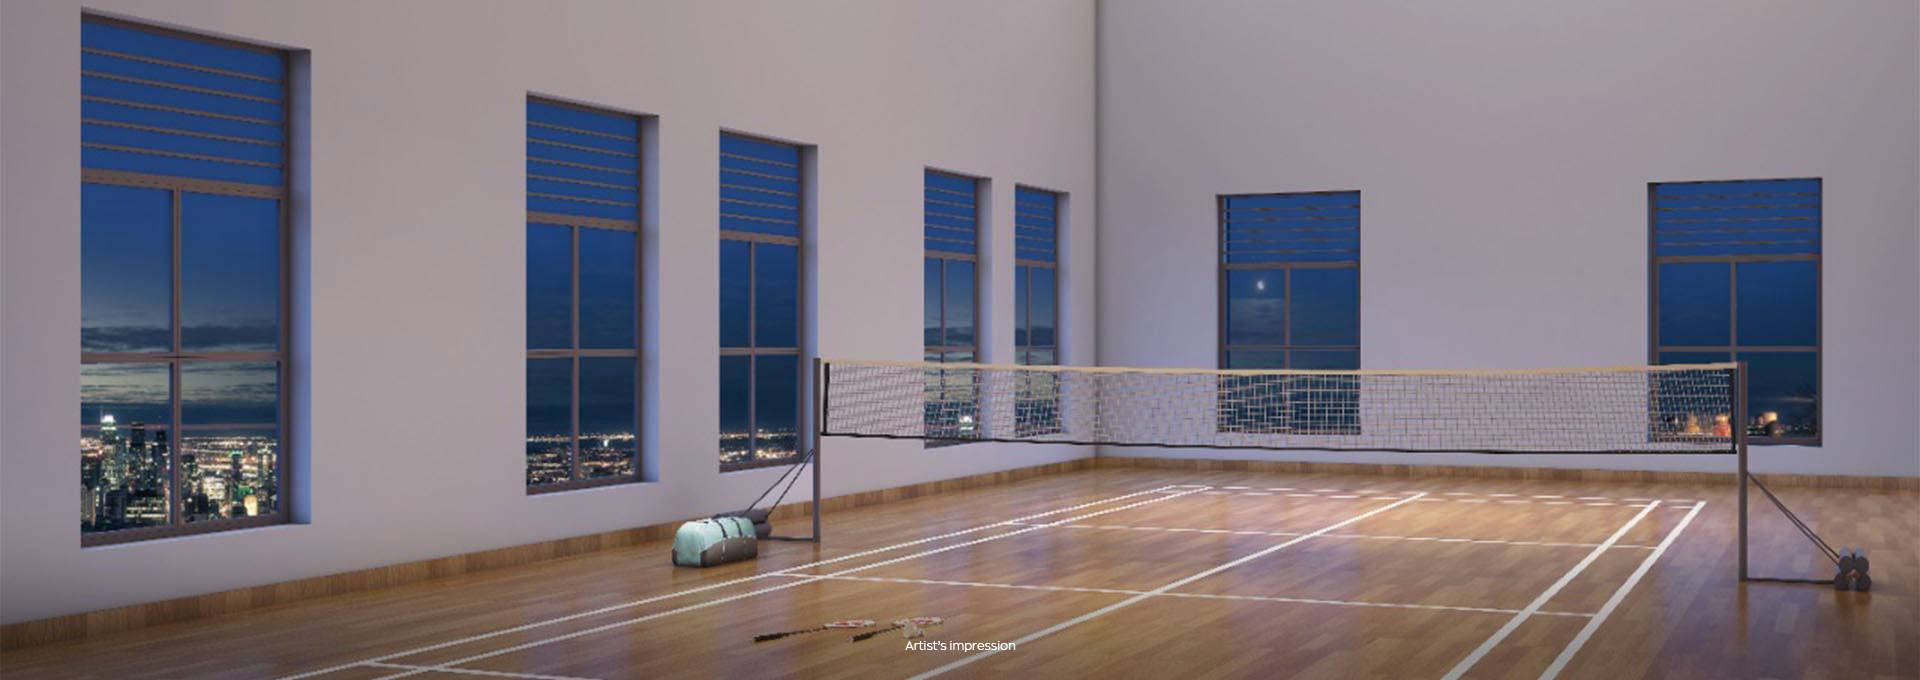 kandivali badminton